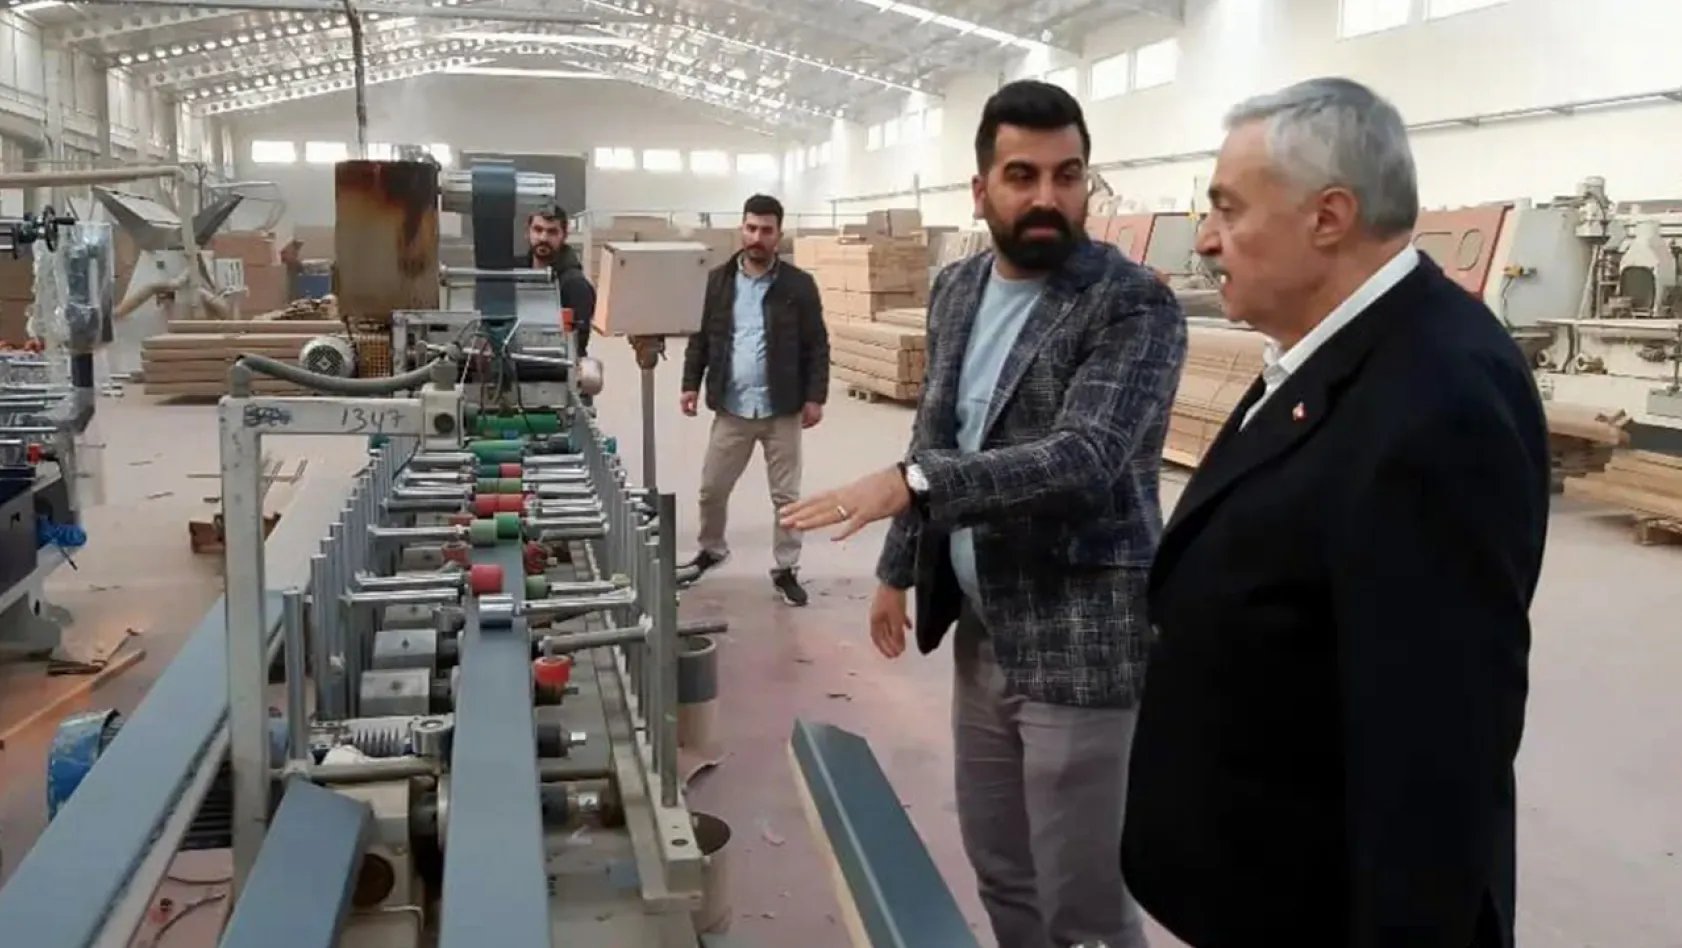 Milletvekili Demirbağ, mobilya üretim tesislerinde incelemelerde bulundu